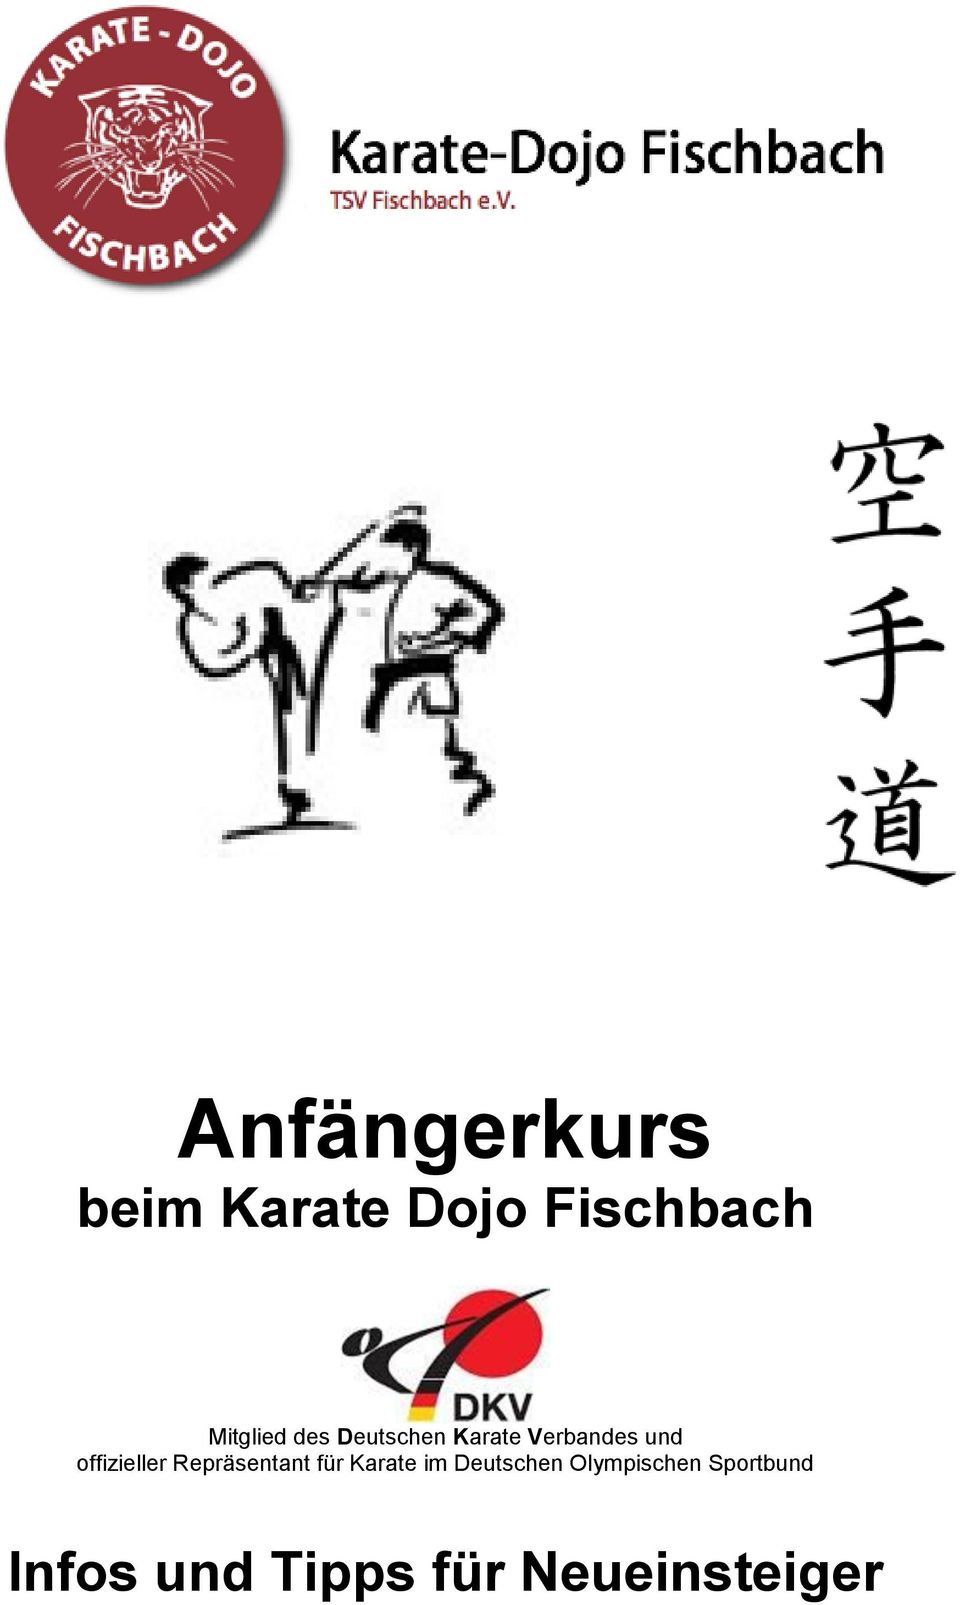 offizieller Repräsentant für Karate im